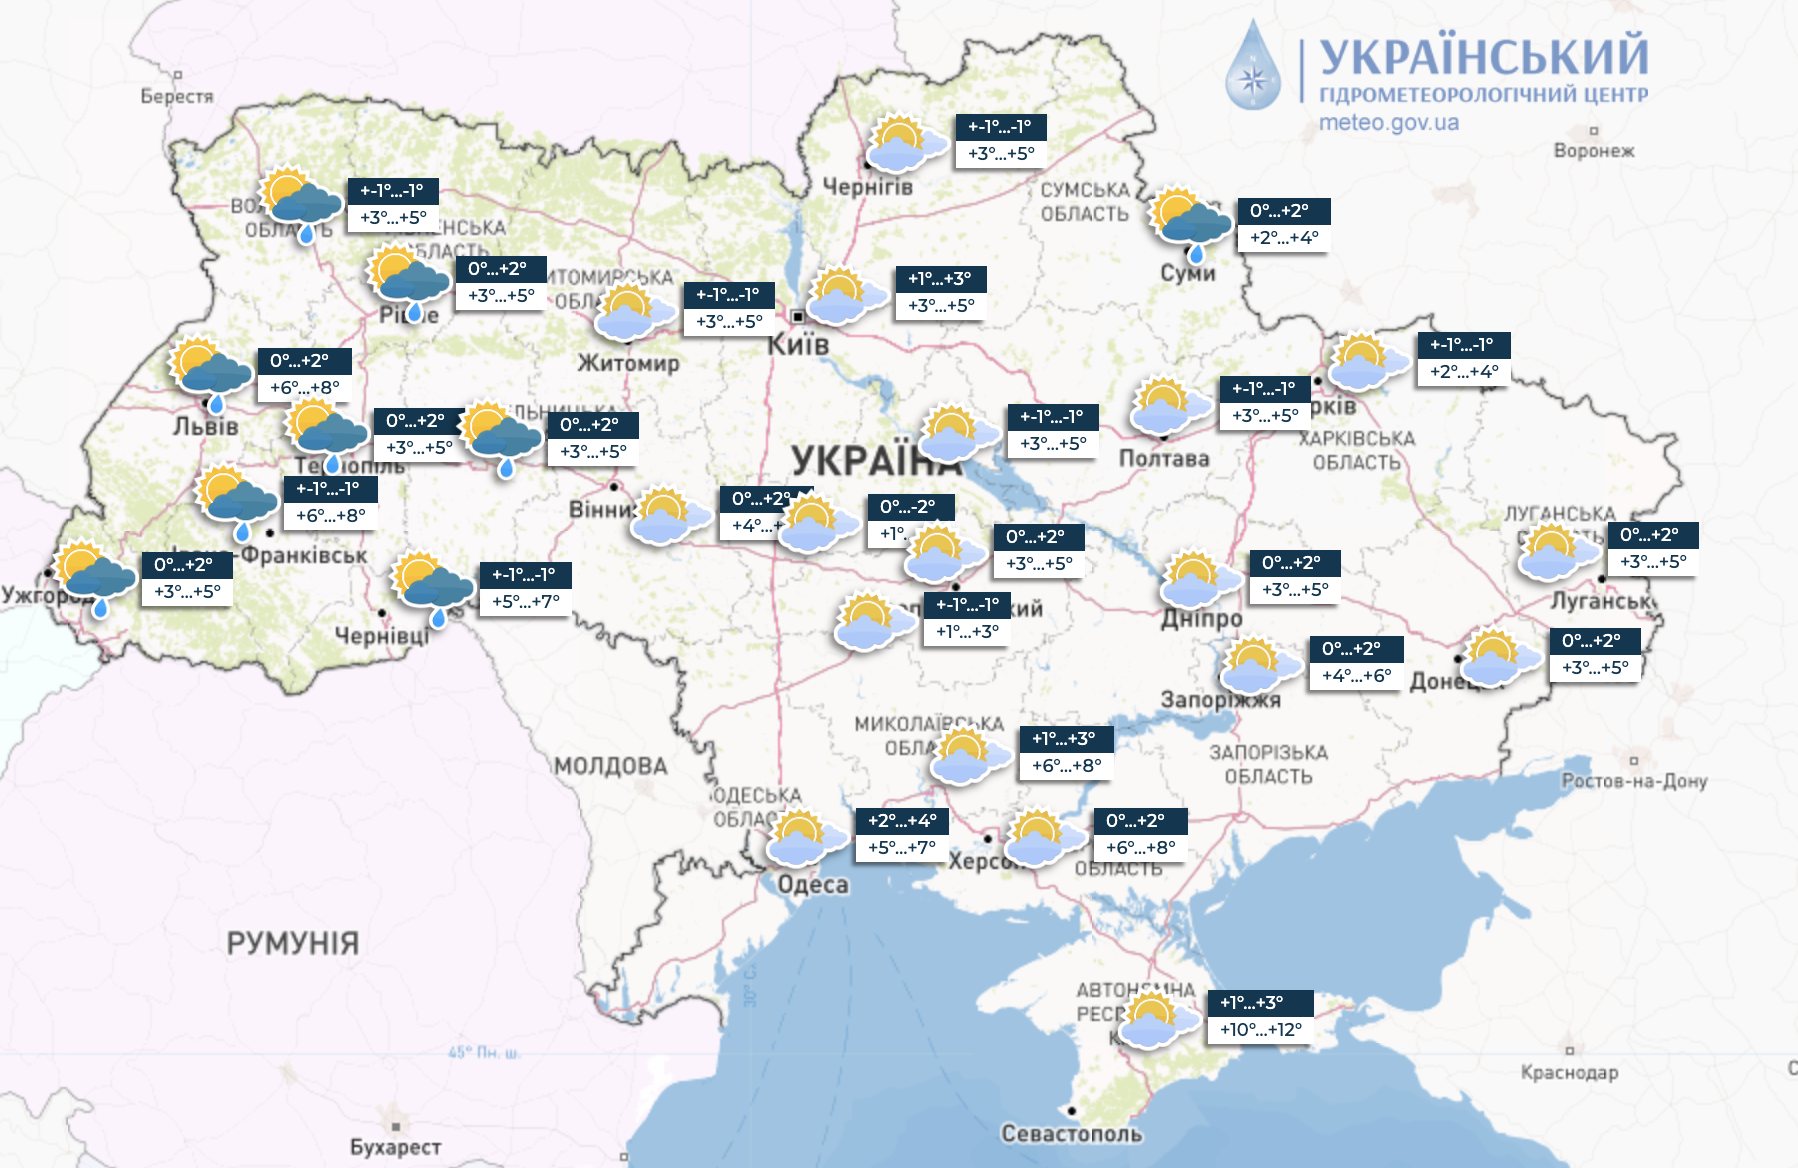 В Украину идет потепление, но возможны ледяные дожди: народный синоптик предупредил об угрозе